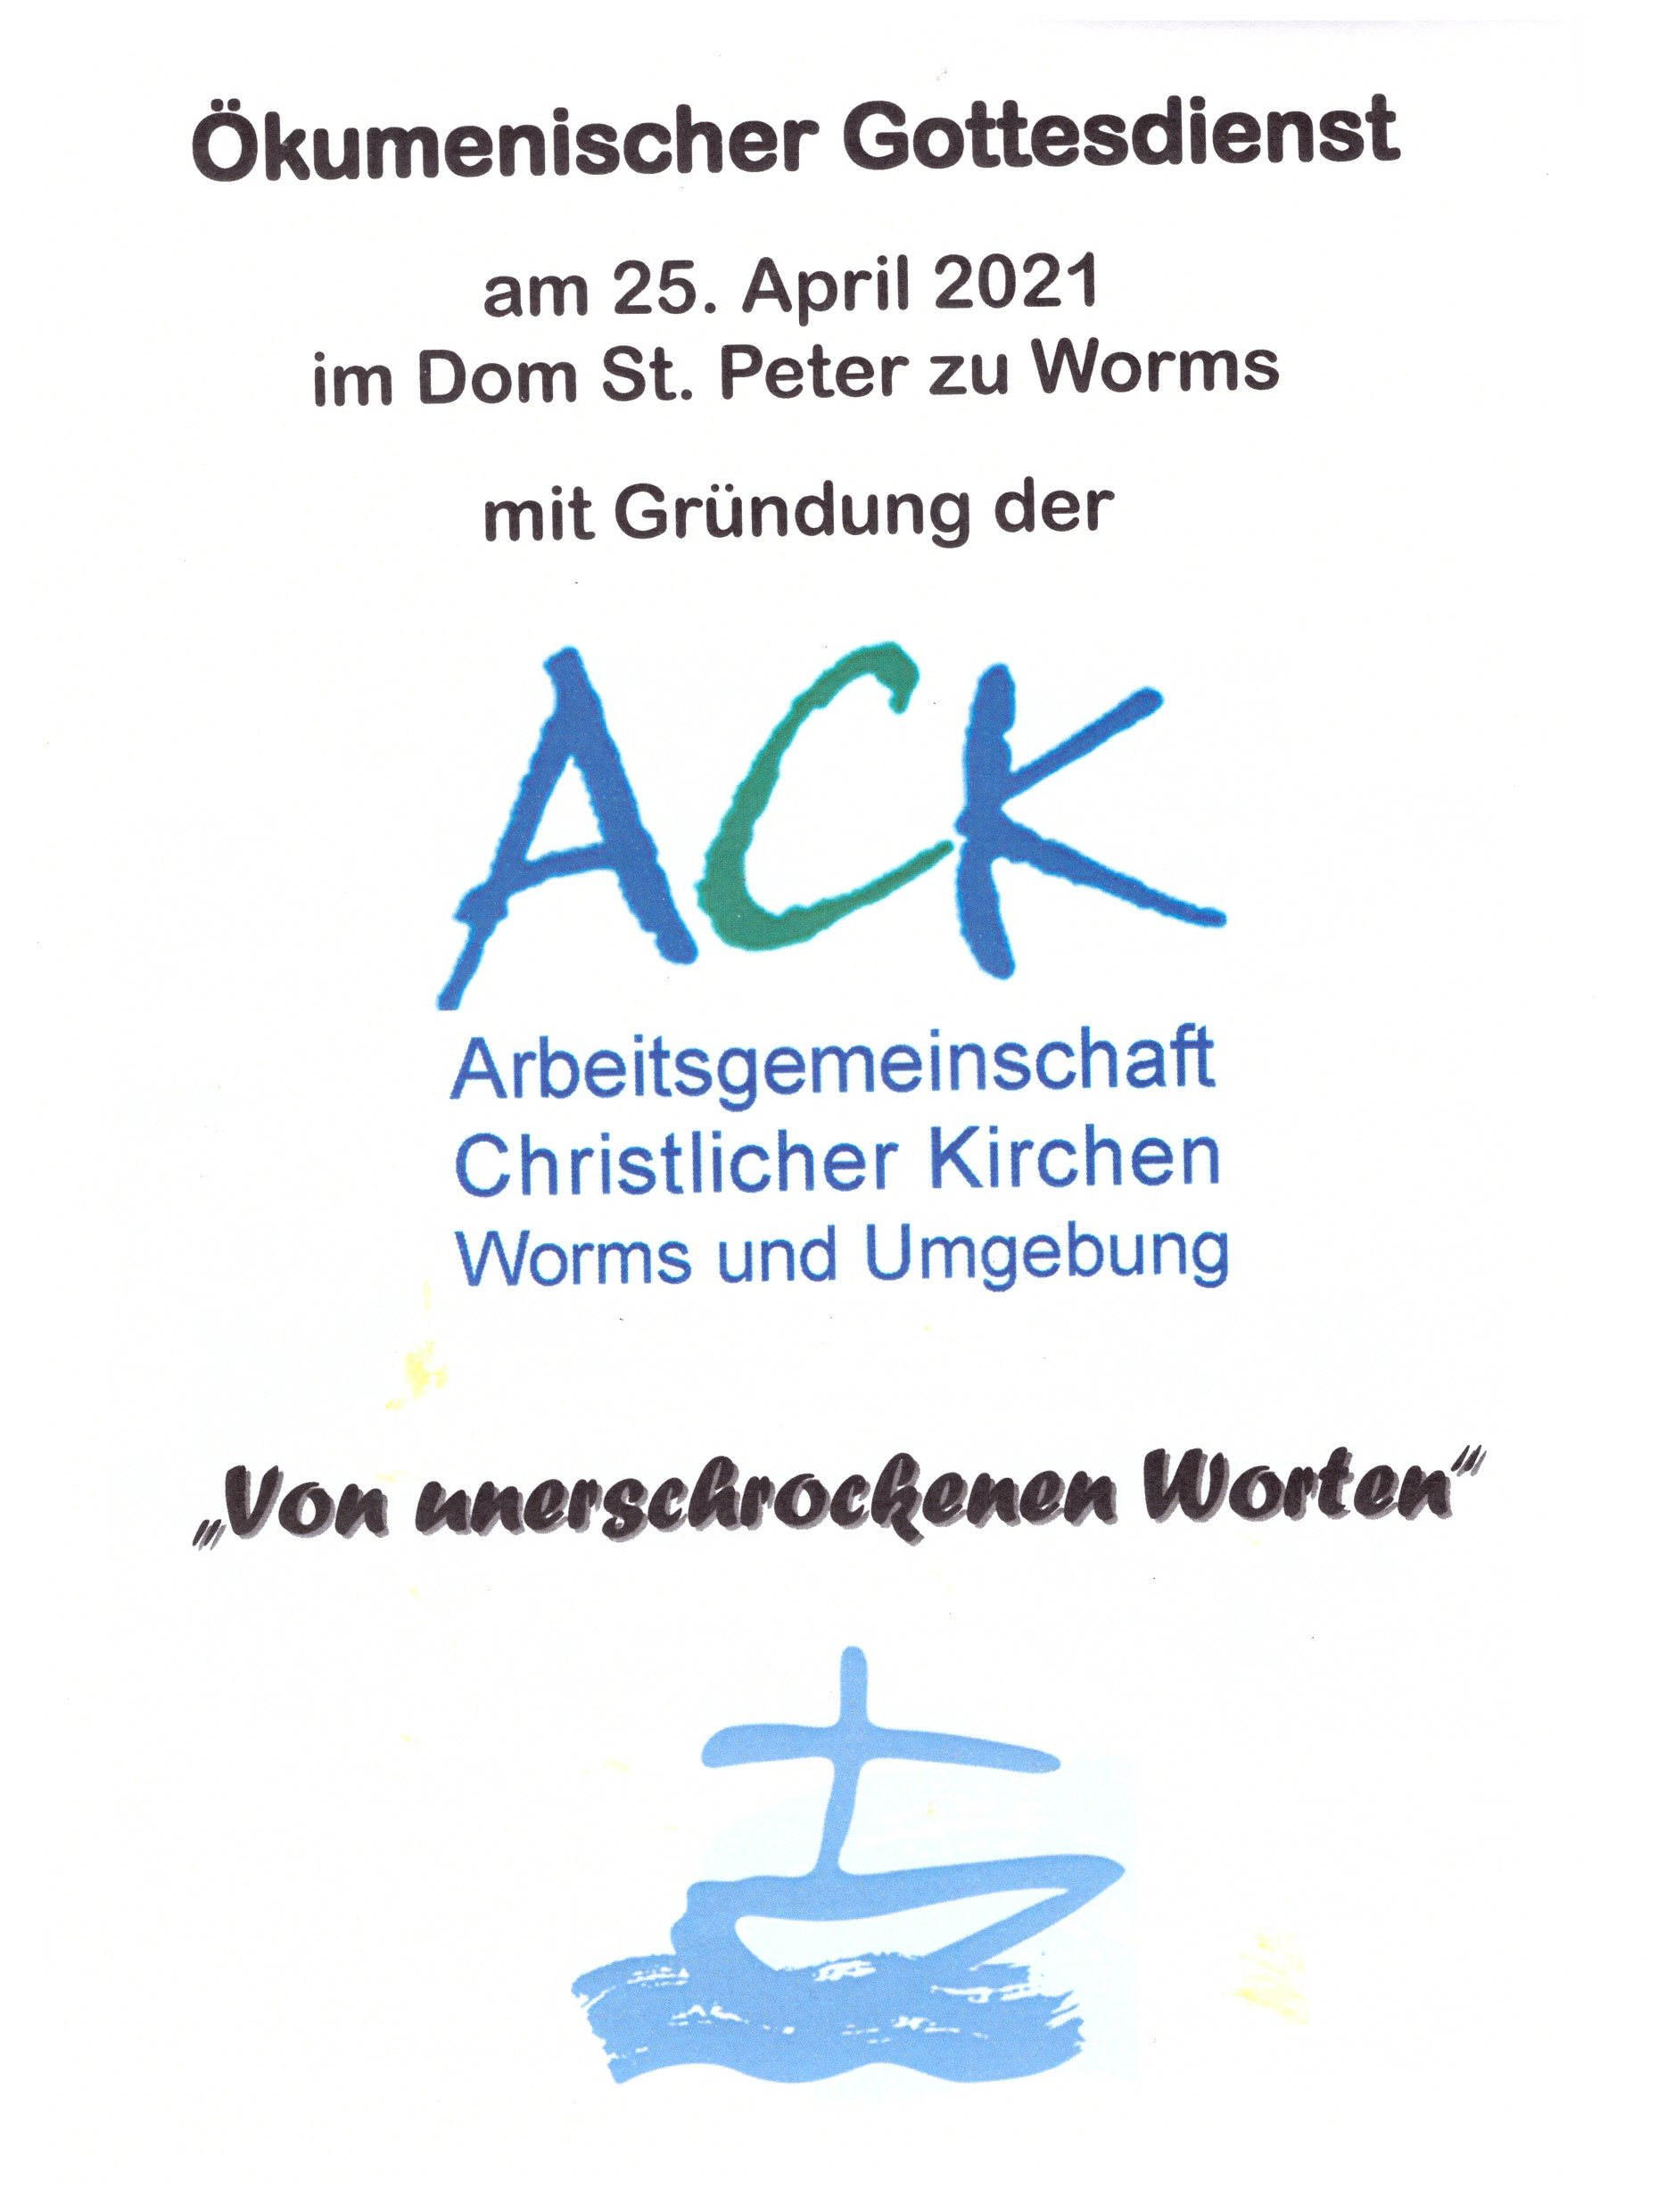 Gründung der Arbeitsgemeinschaft christlicher Kirchen in Worms und Umgebung (c) Pfarrgruppe Dom St. Peter und St. Martin